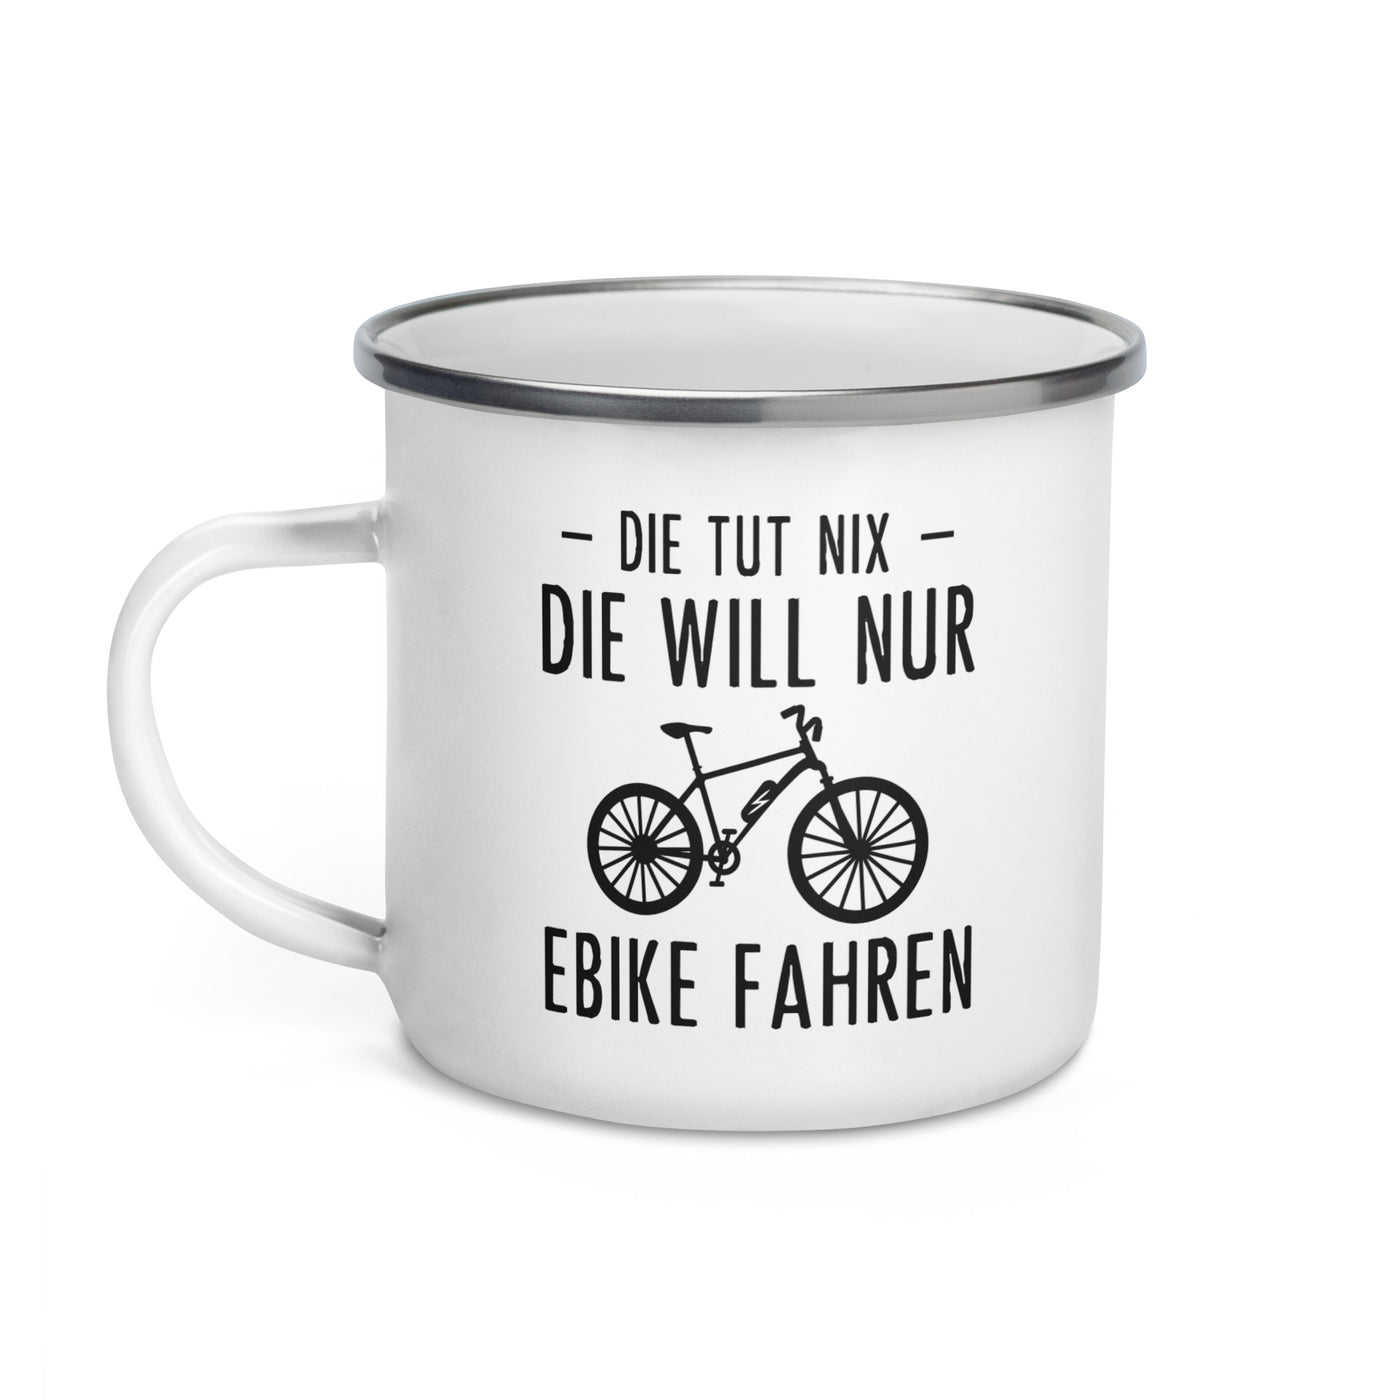 Die Tut Nix Die Will Nur Ebike Fahren - Emaille Tasse e-bike